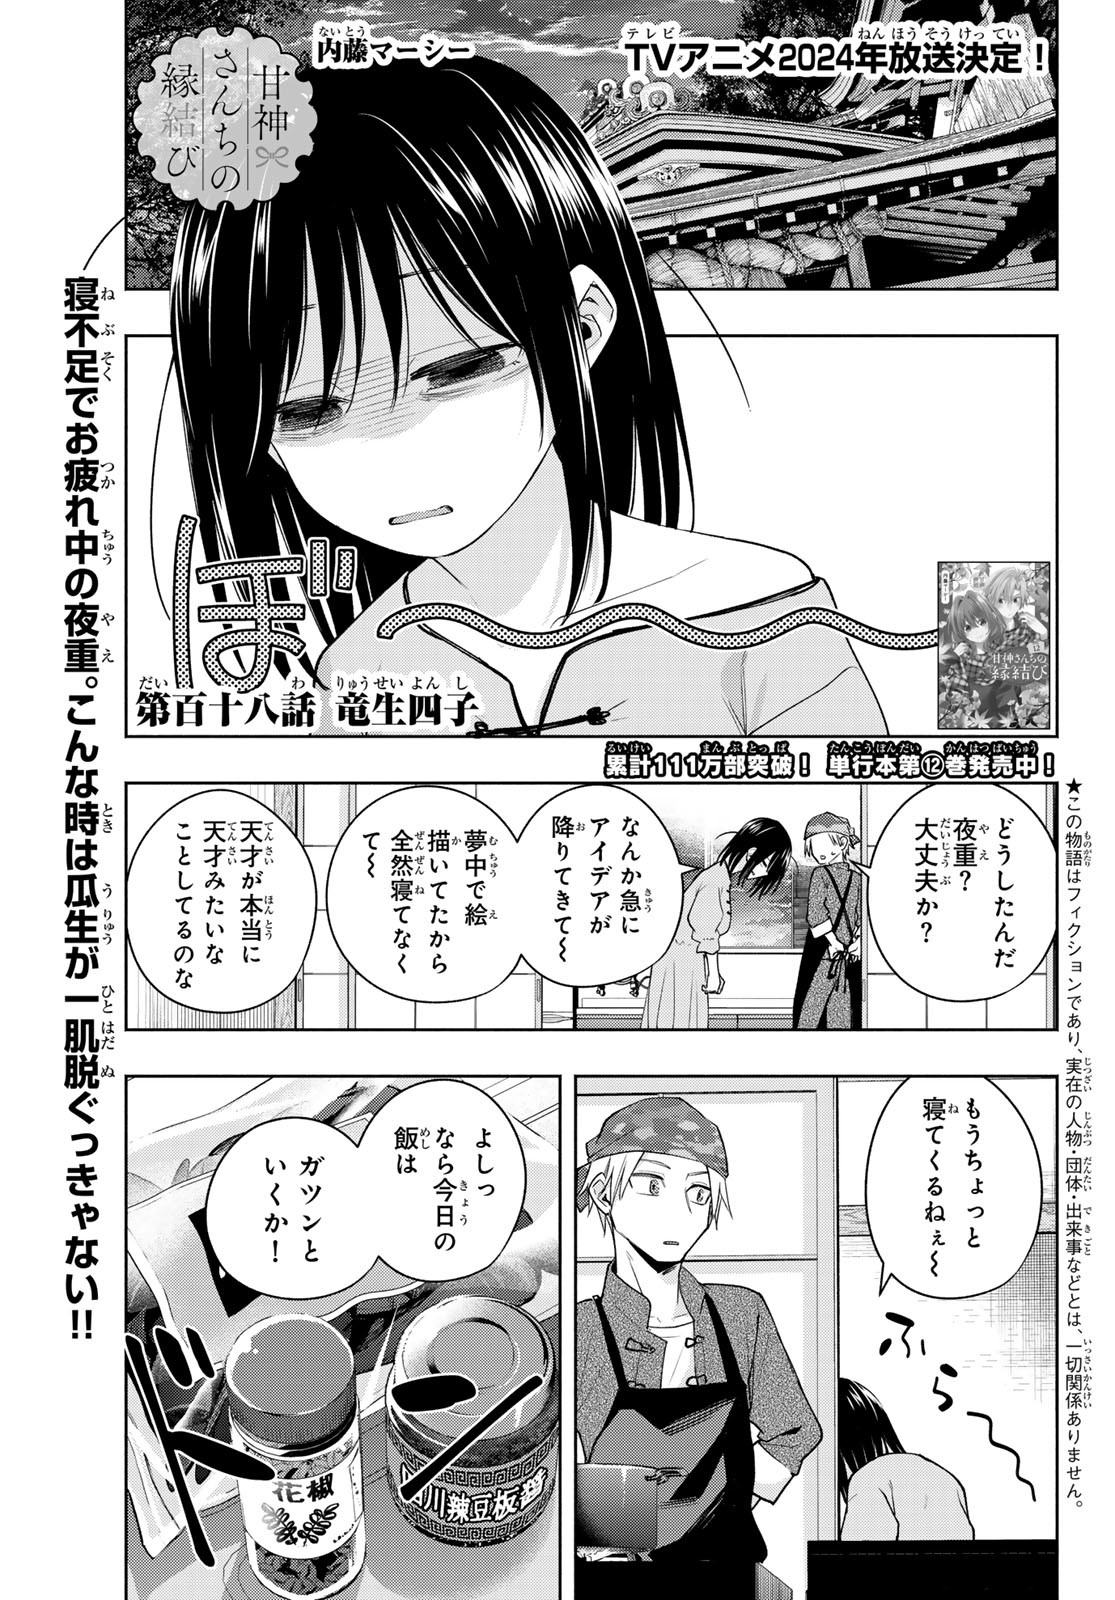 Amagami-san Chi no Enmusubi - Chapter 118 - Page 1